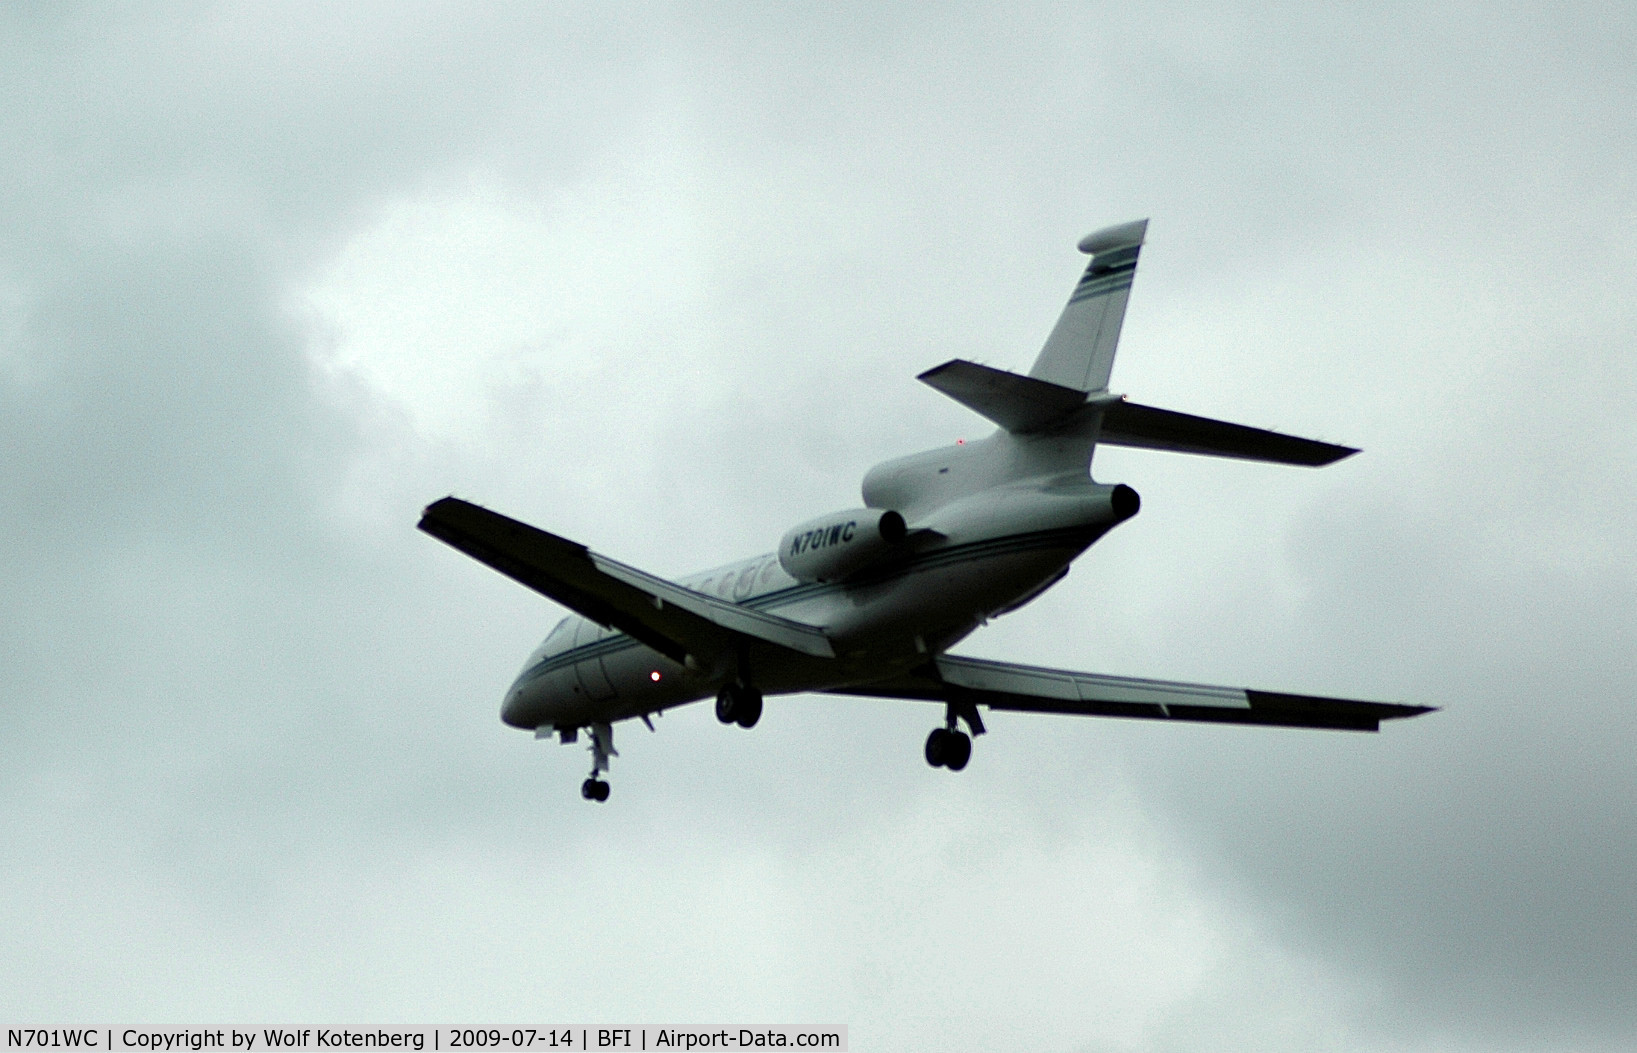 N701WC, 2003 Dassault Mystere Falcon 50 C/N 333, in flight, on final